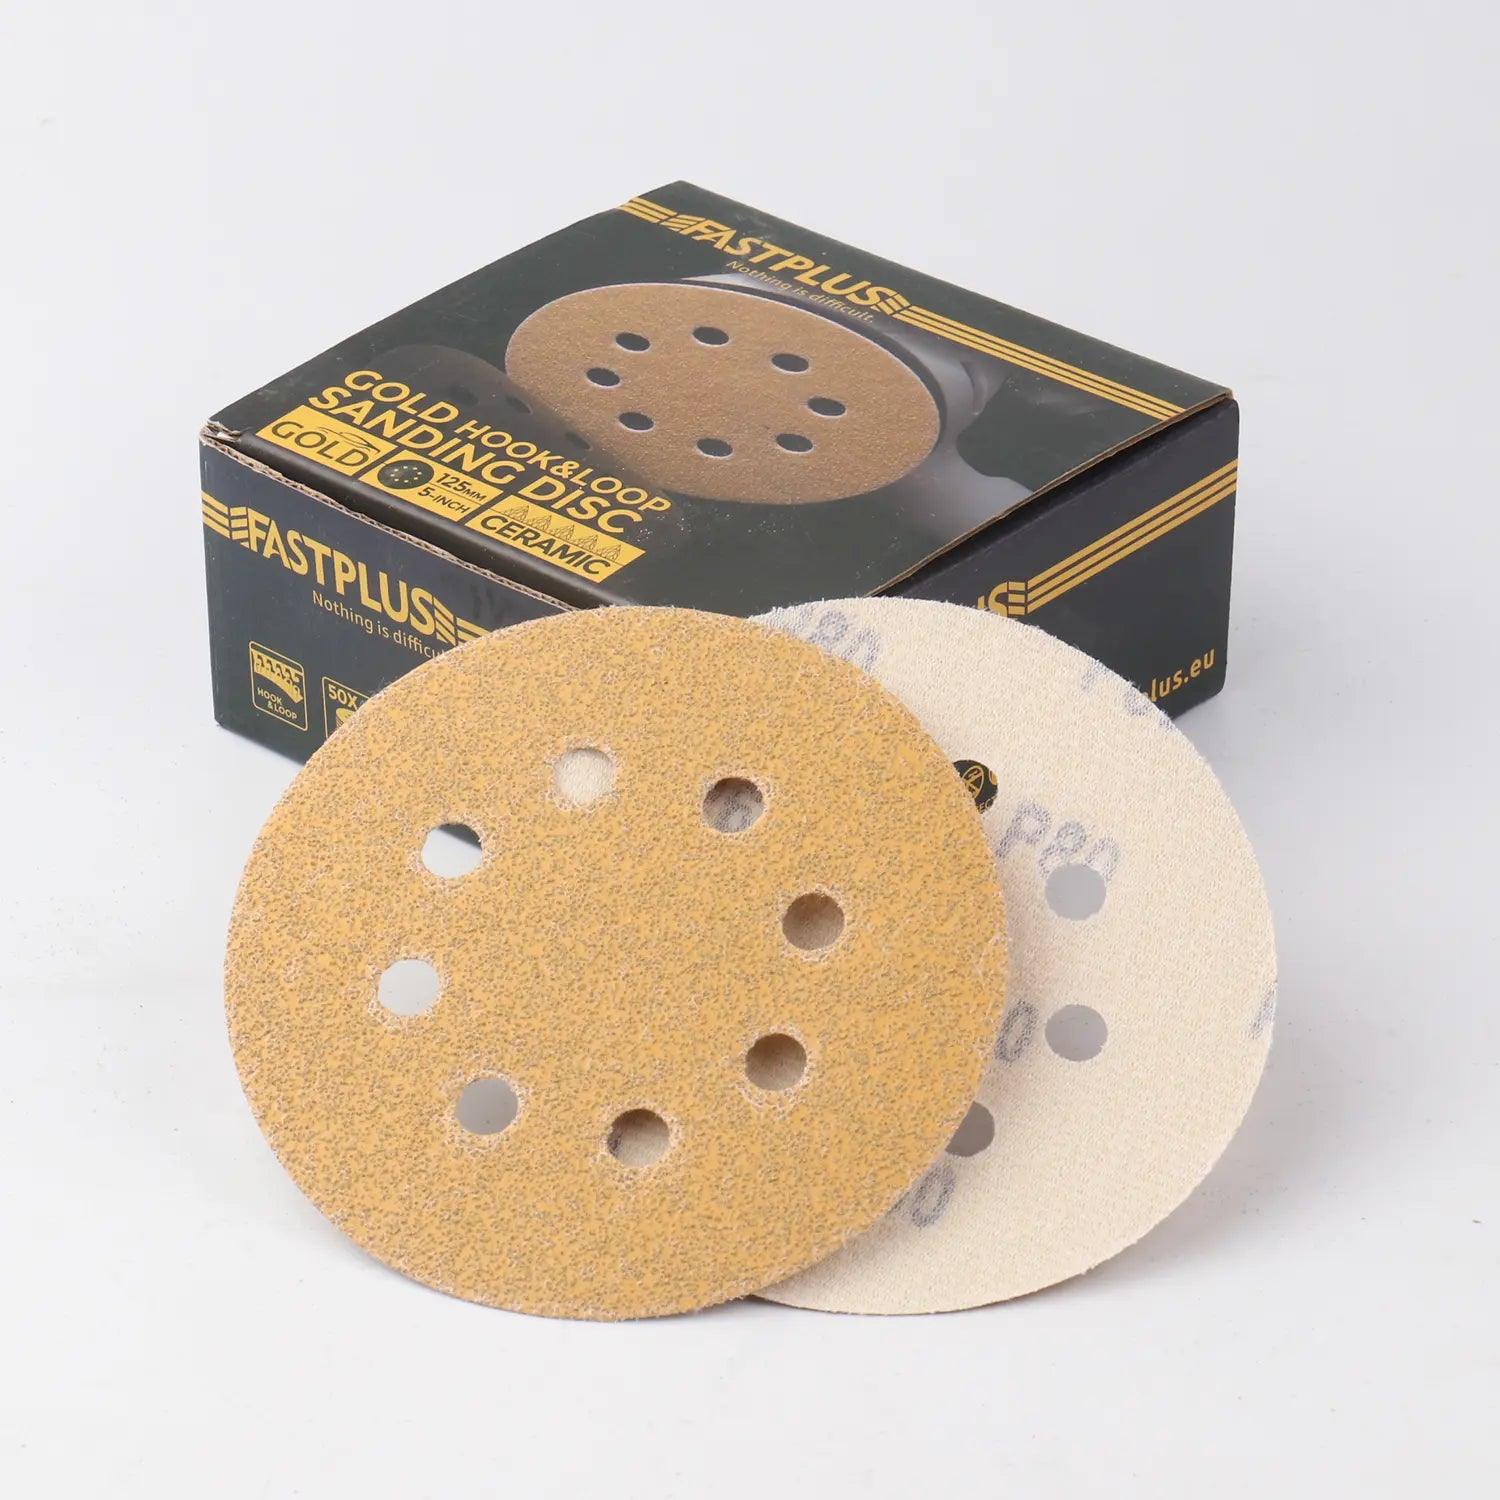 125mm Klett-schleifscheiben gold mirka f15 sanding discs fastplus P80